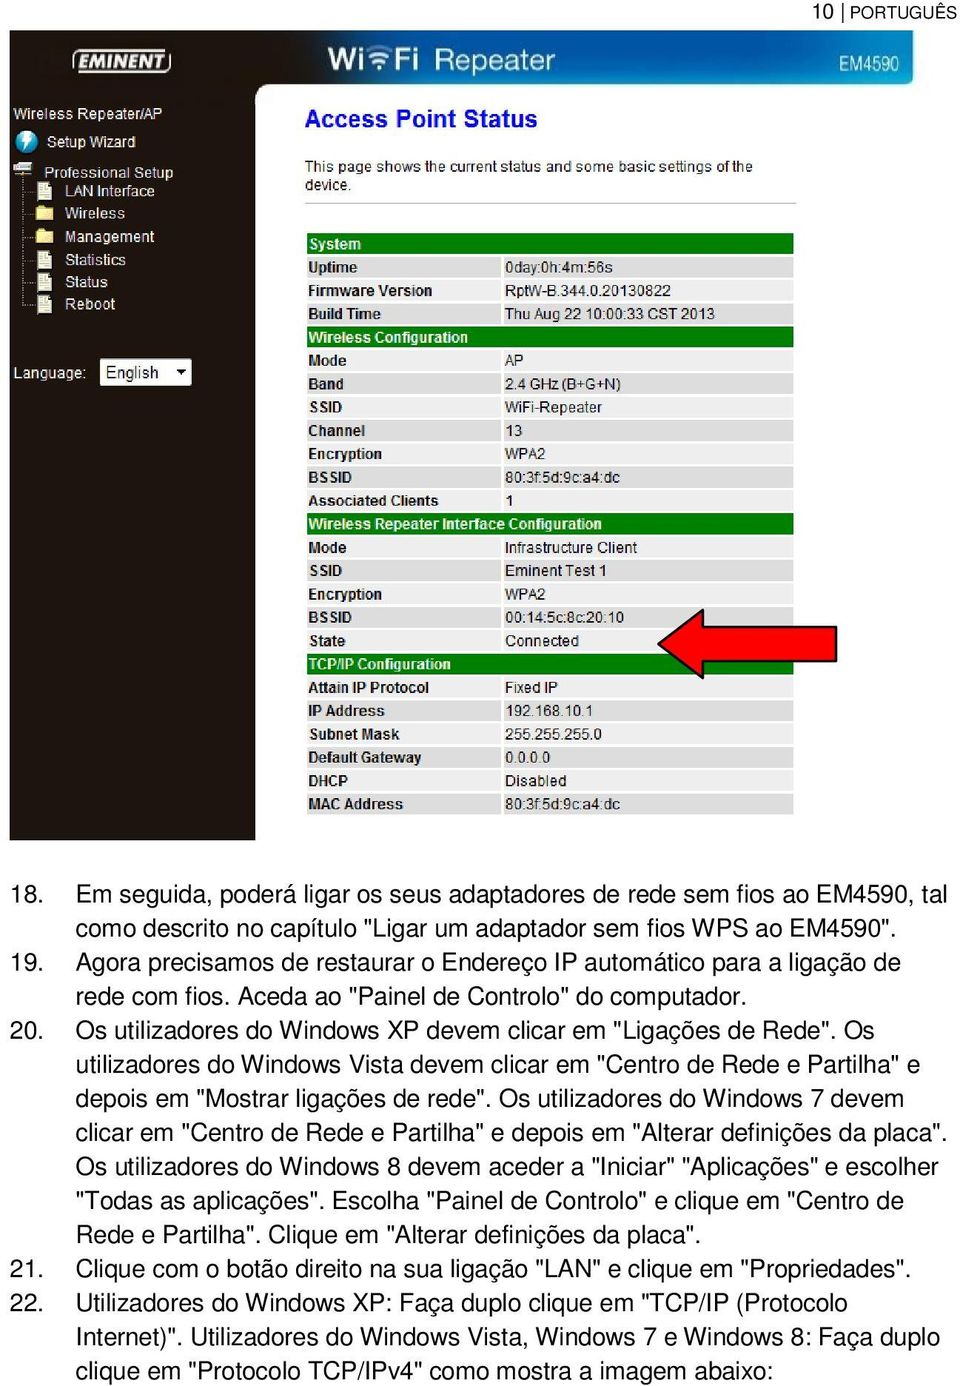 Os utilizadores do Windows XP devem clicar em "Ligações de Rede". Os utilizadores do Windows Vista devem clicar em "Centro de Rede e Partilha" e depois em "Mostrar ligações de rede".